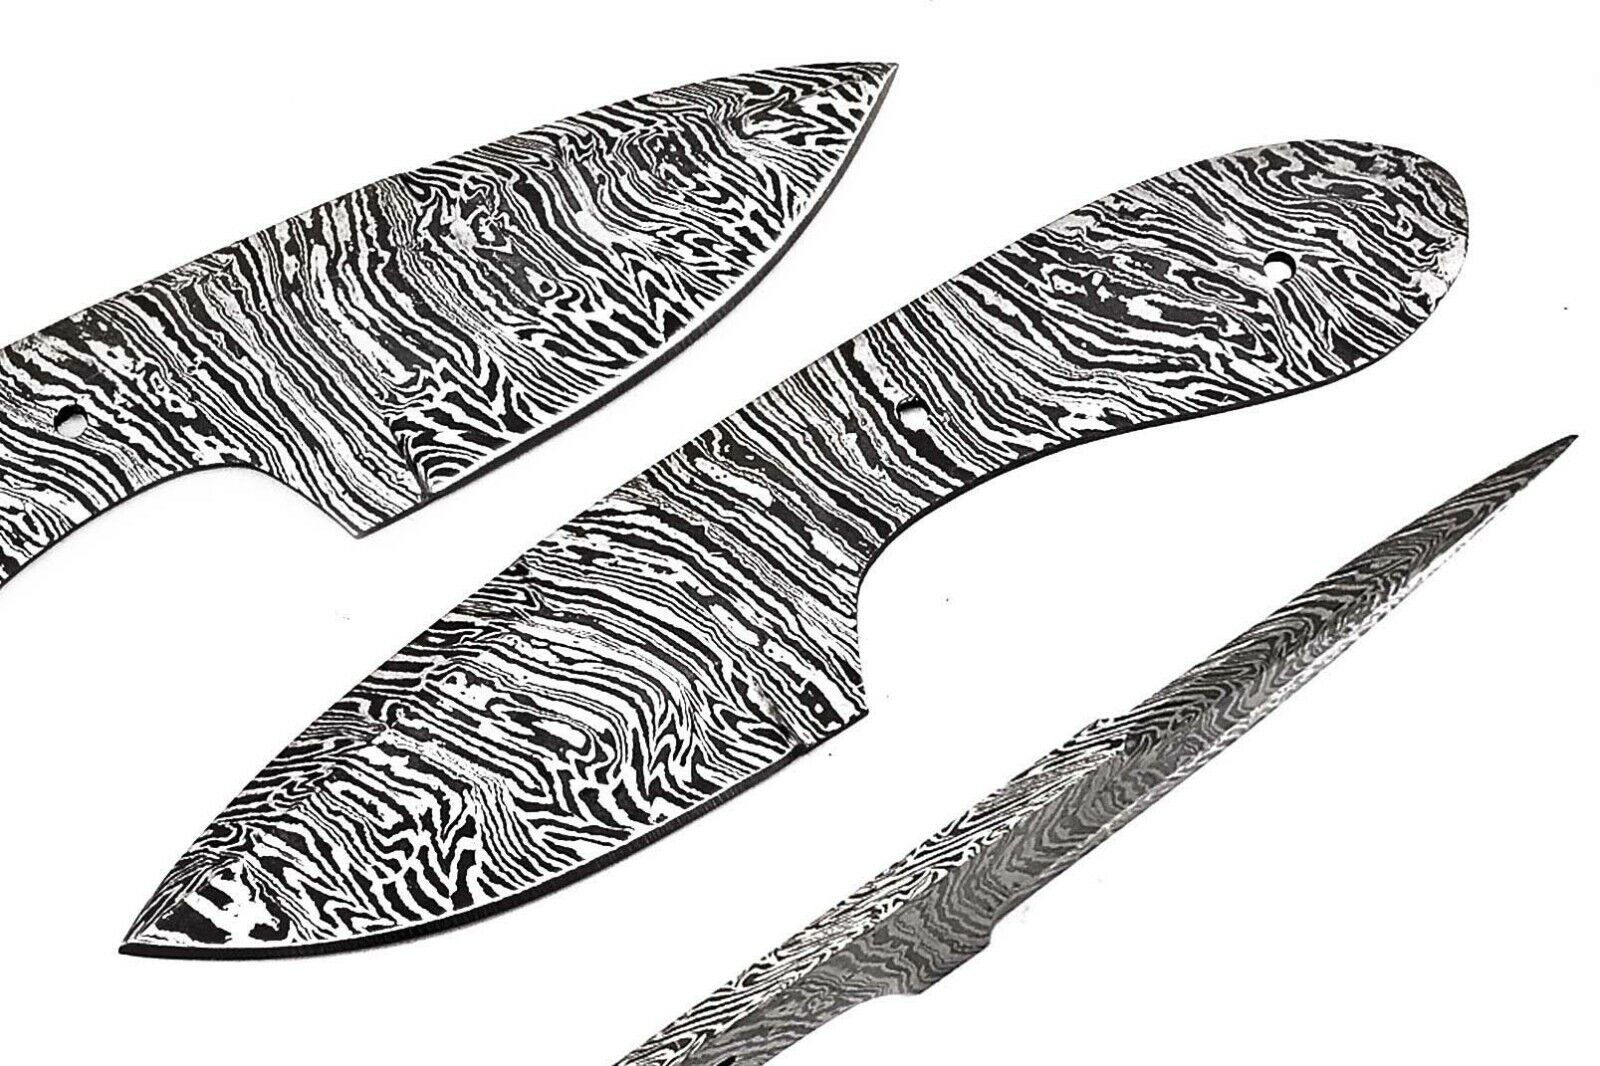 Custom Night Raider Damascus Steel Blank Blade FF62 For Skinner Knife